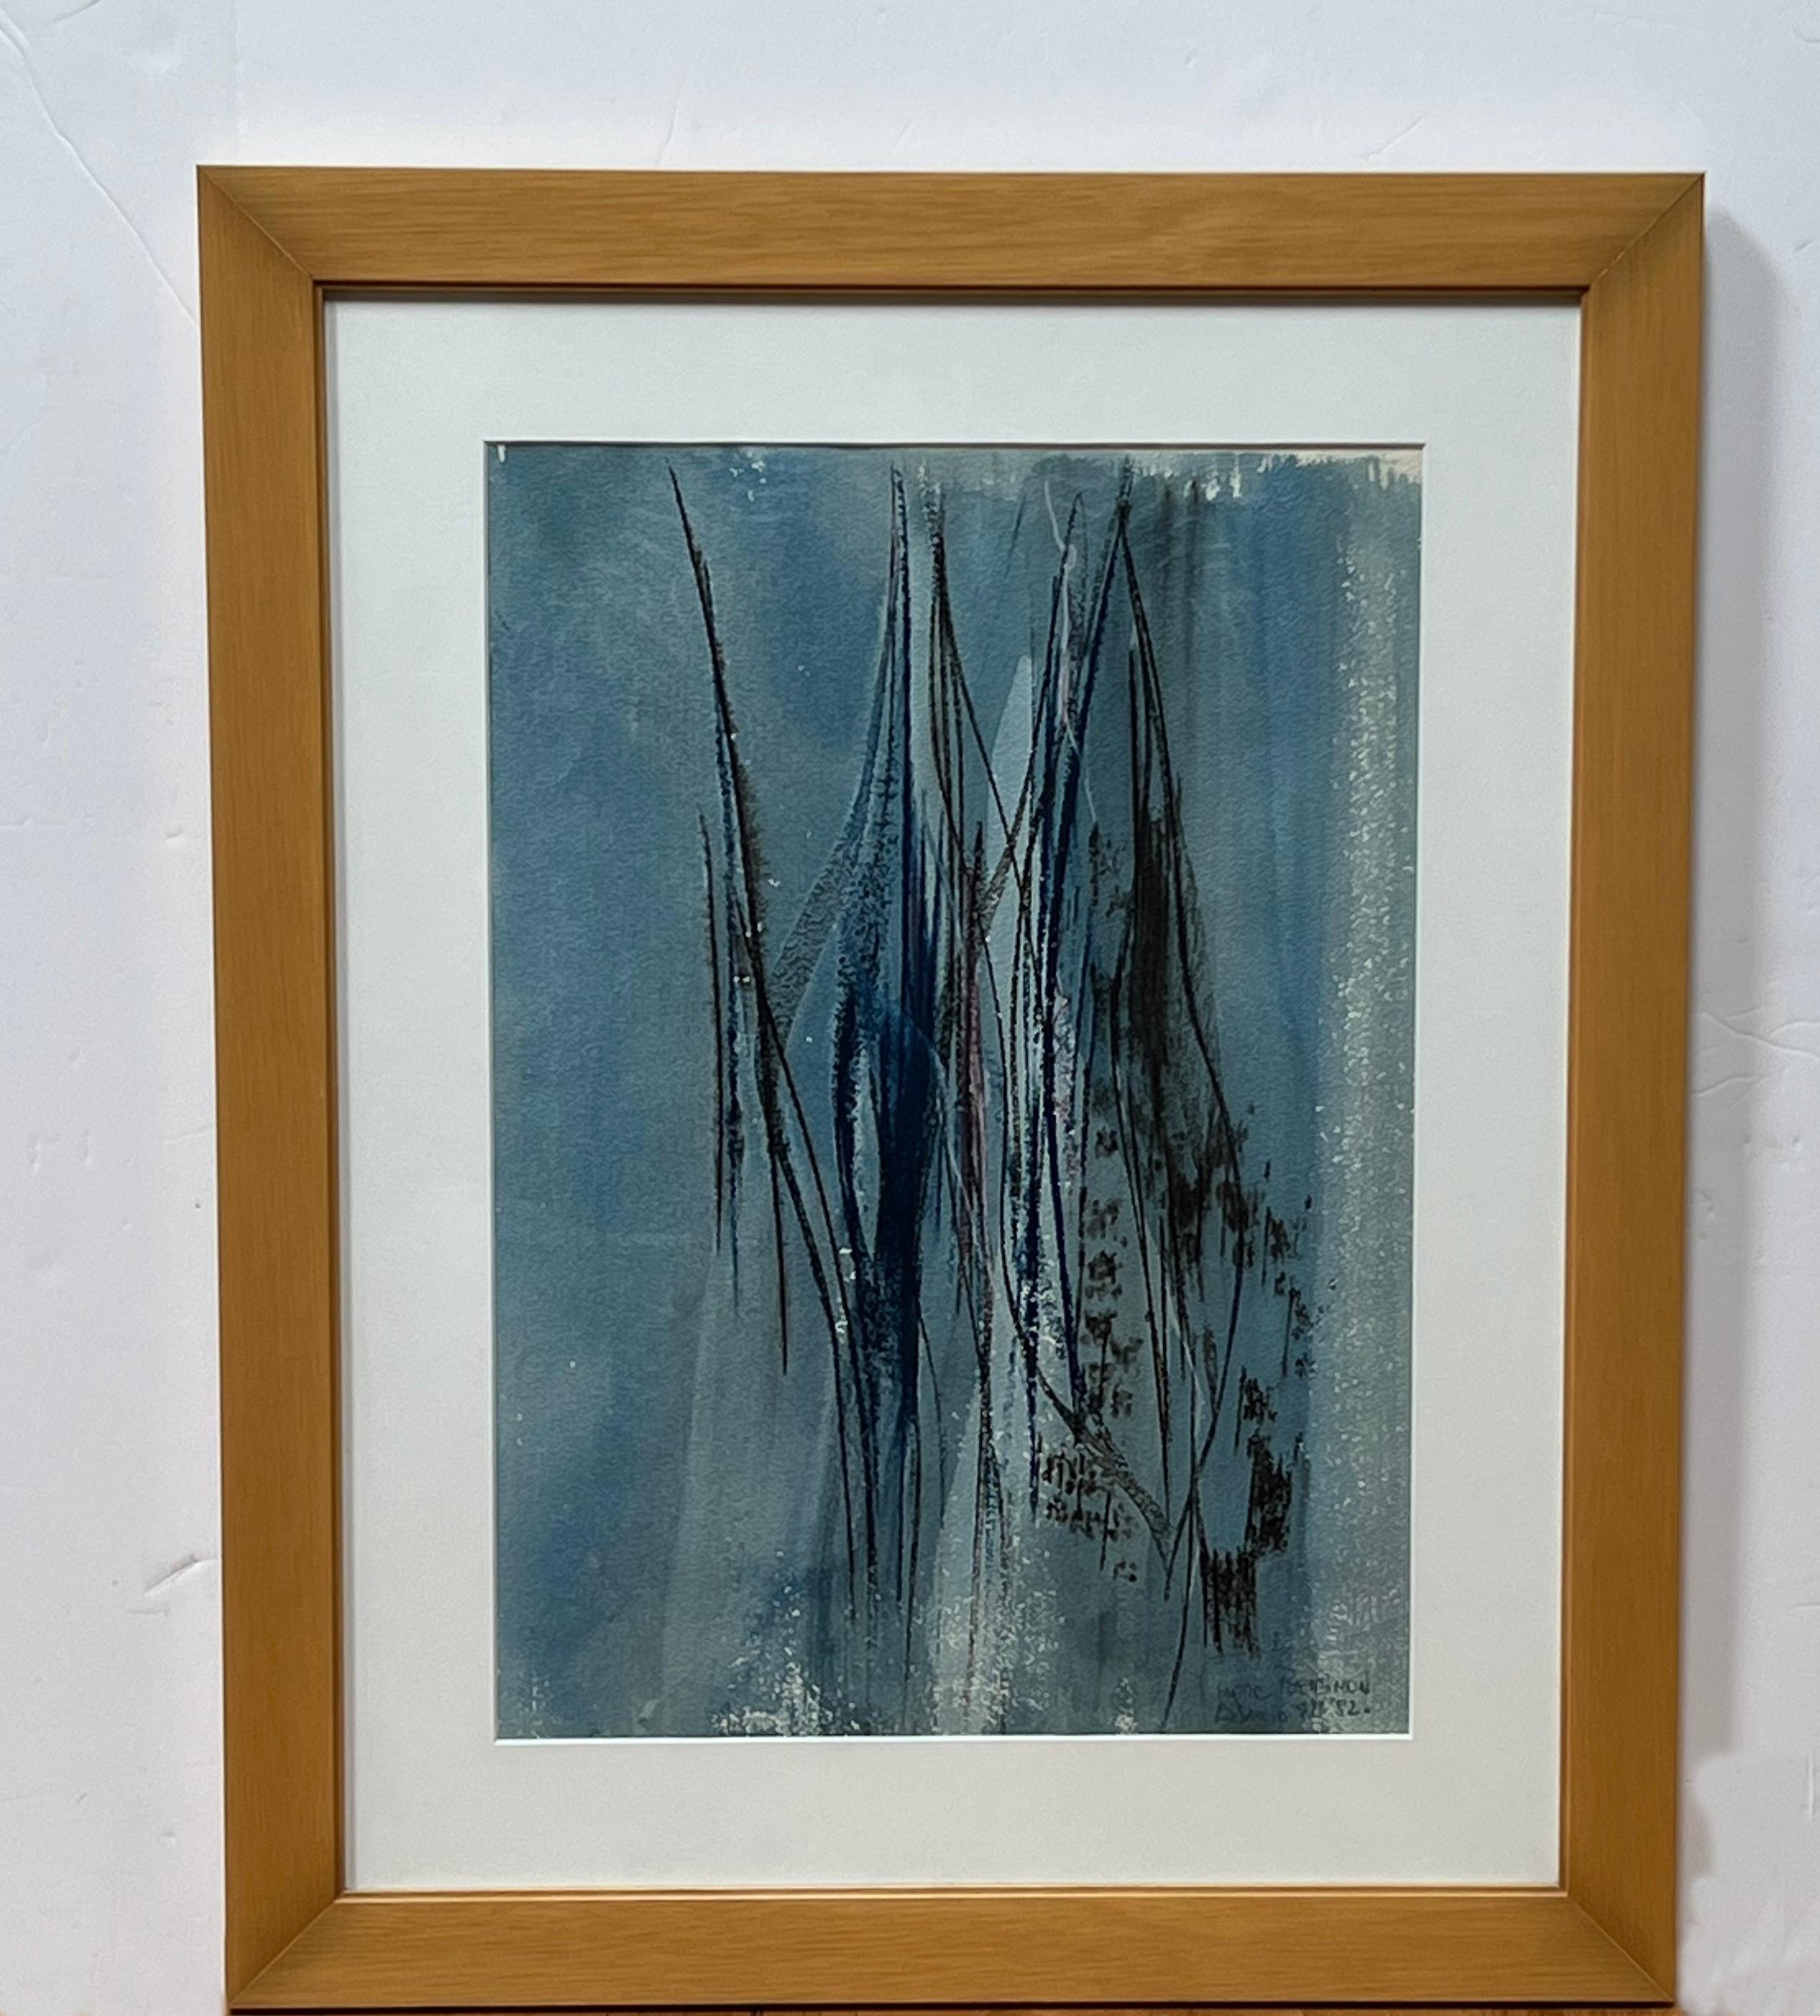 Cette aquarelle abstraite de l'artiste américain Marc Bensimon (1926-) présente des lignes verticales de bleus qui glissent sur la toile comme des gouttes de pluie sur une fenêtre.
Elle est signée au crayon bleu "Marc Benimon Los Angeles '82" dans